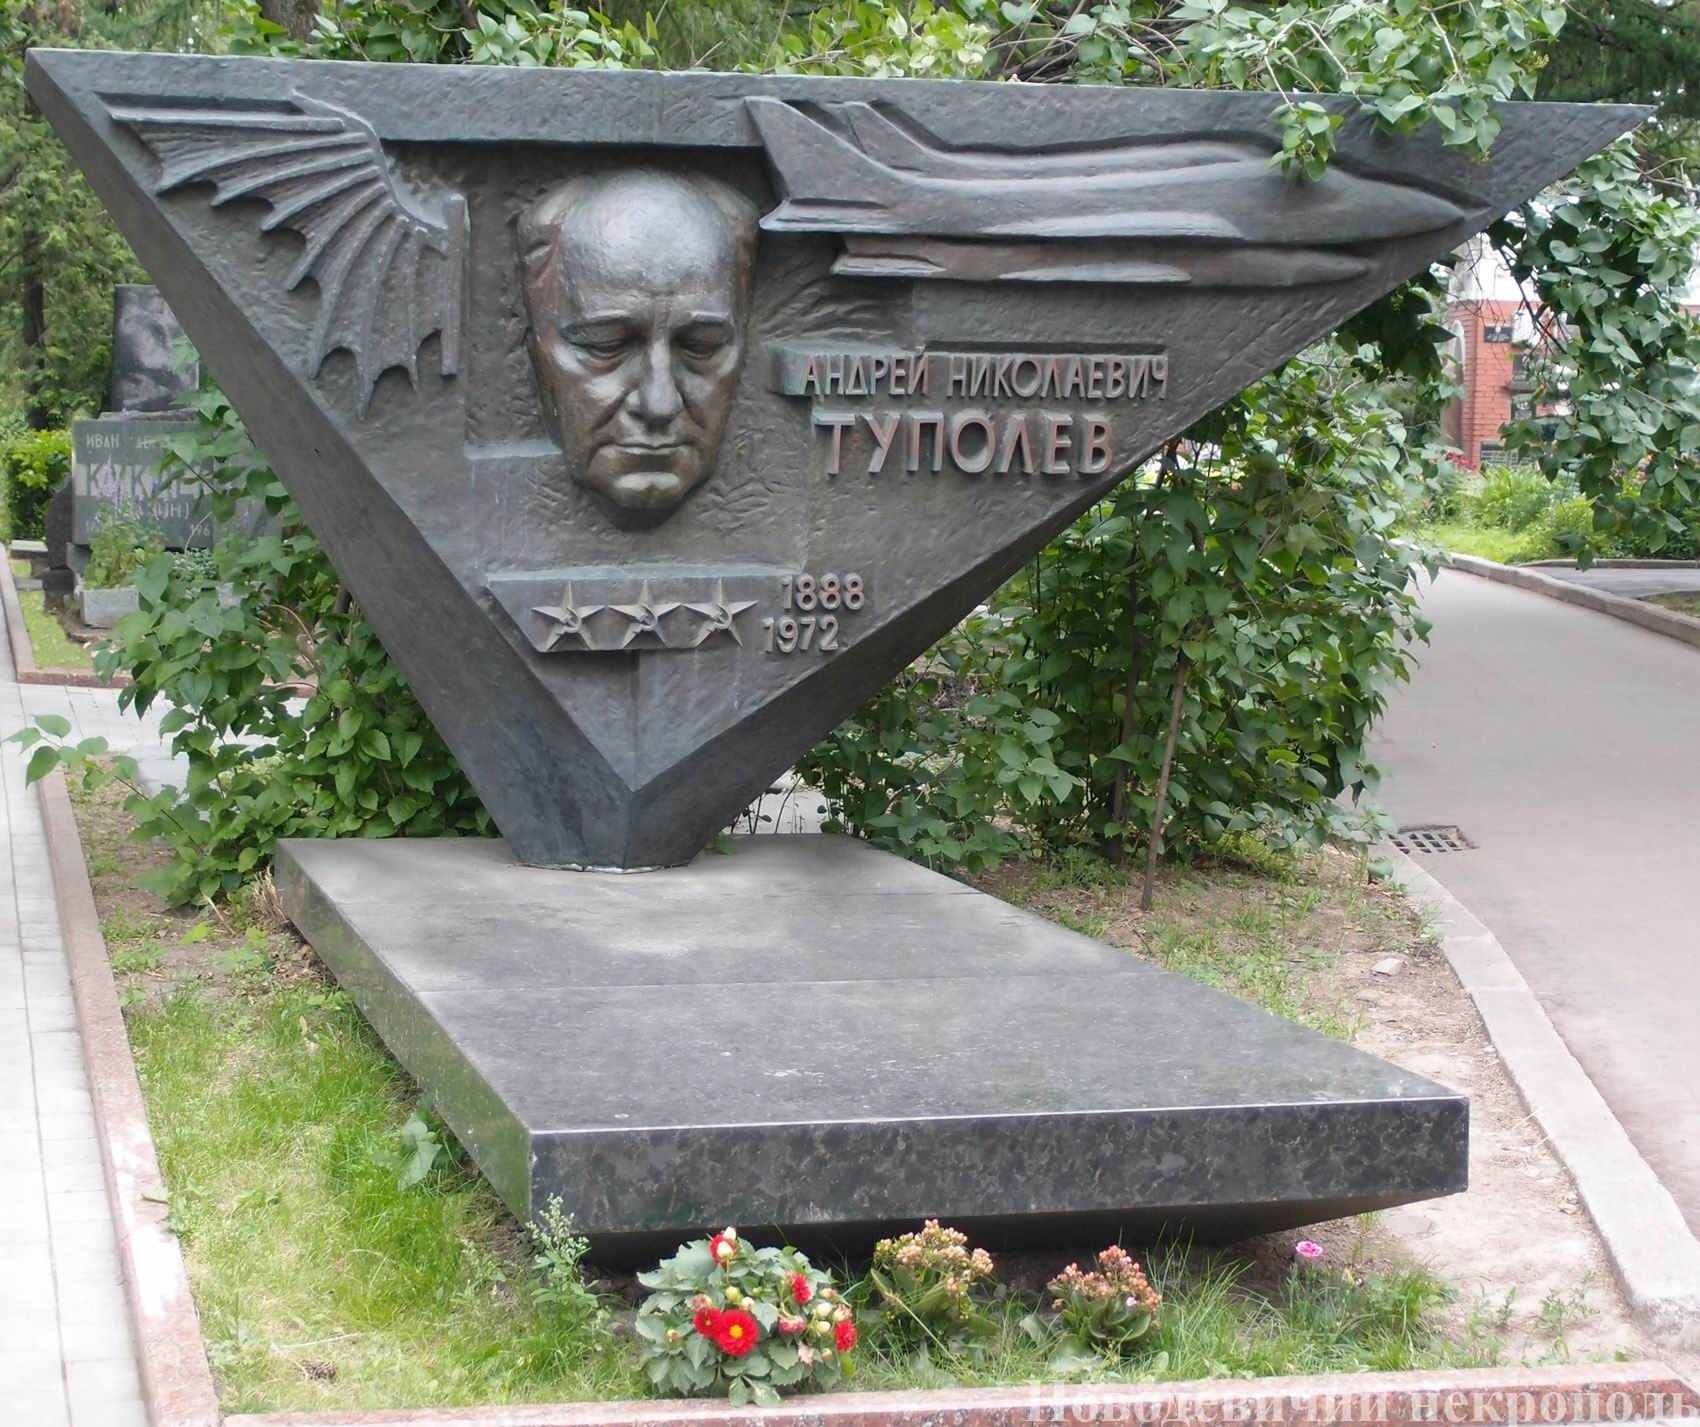 Памятник на могиле Туполева А.Н. (1888–1972), ск. Г.Таидзе, арх. Я.Белопольский, на Новодевичьем кладбище (8–46–1). Нажмите левую кнопку мыши, чтобы увидеть фрагмент памятника.